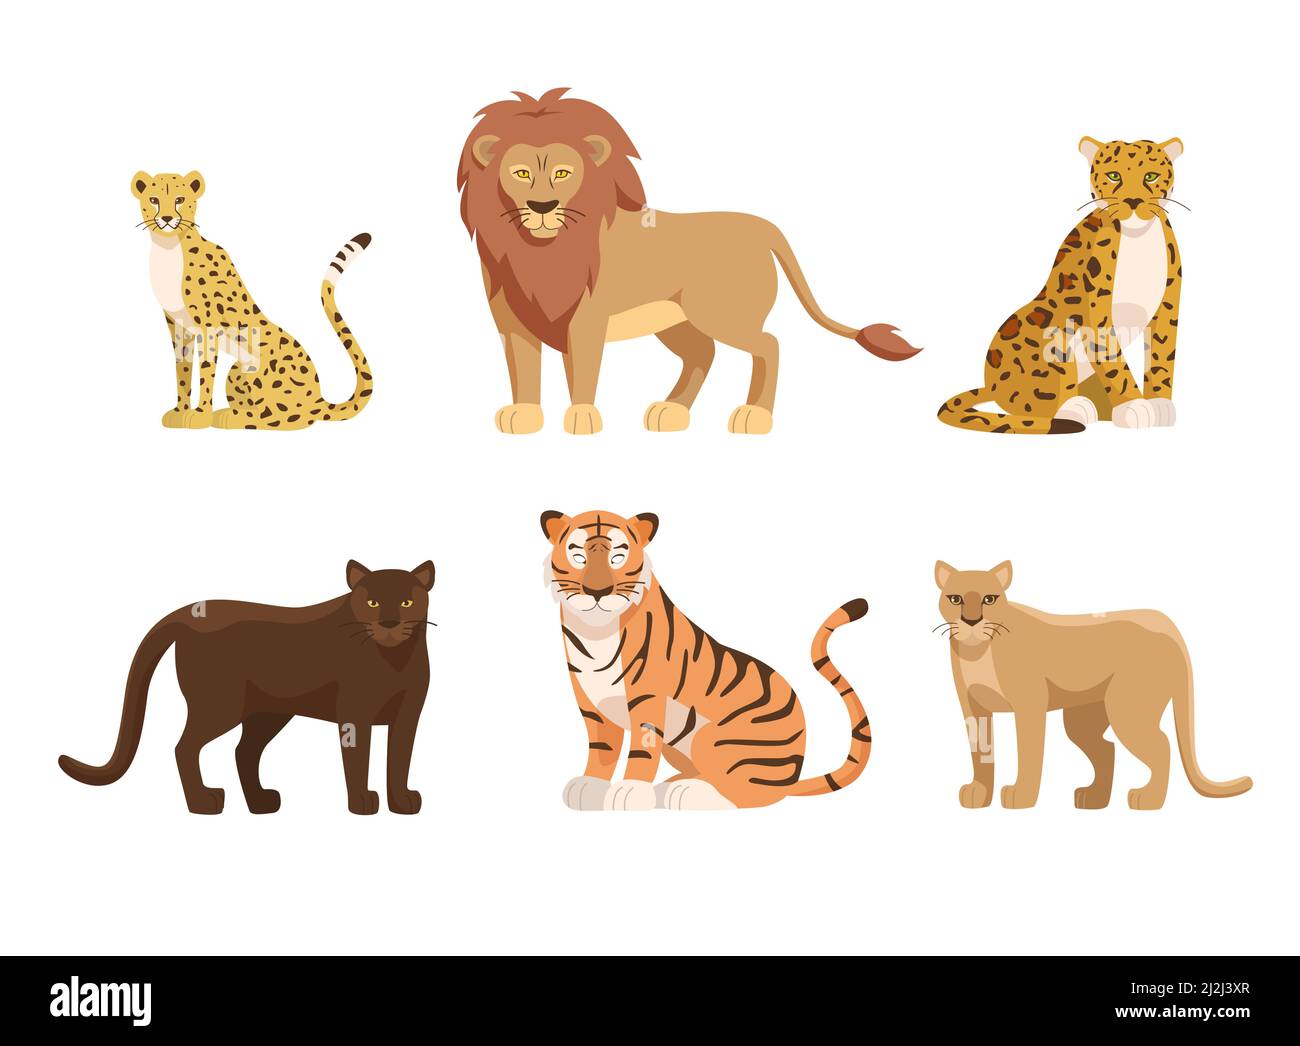 Vektorgrafiken für große Katzen aus Afrika und Nordamerika. Cartoon Tiger, Afrikanischer Löwe, Gepard, Panther, amerikanischer jaguar, Cougar isoliert auf whit Stock Vektor